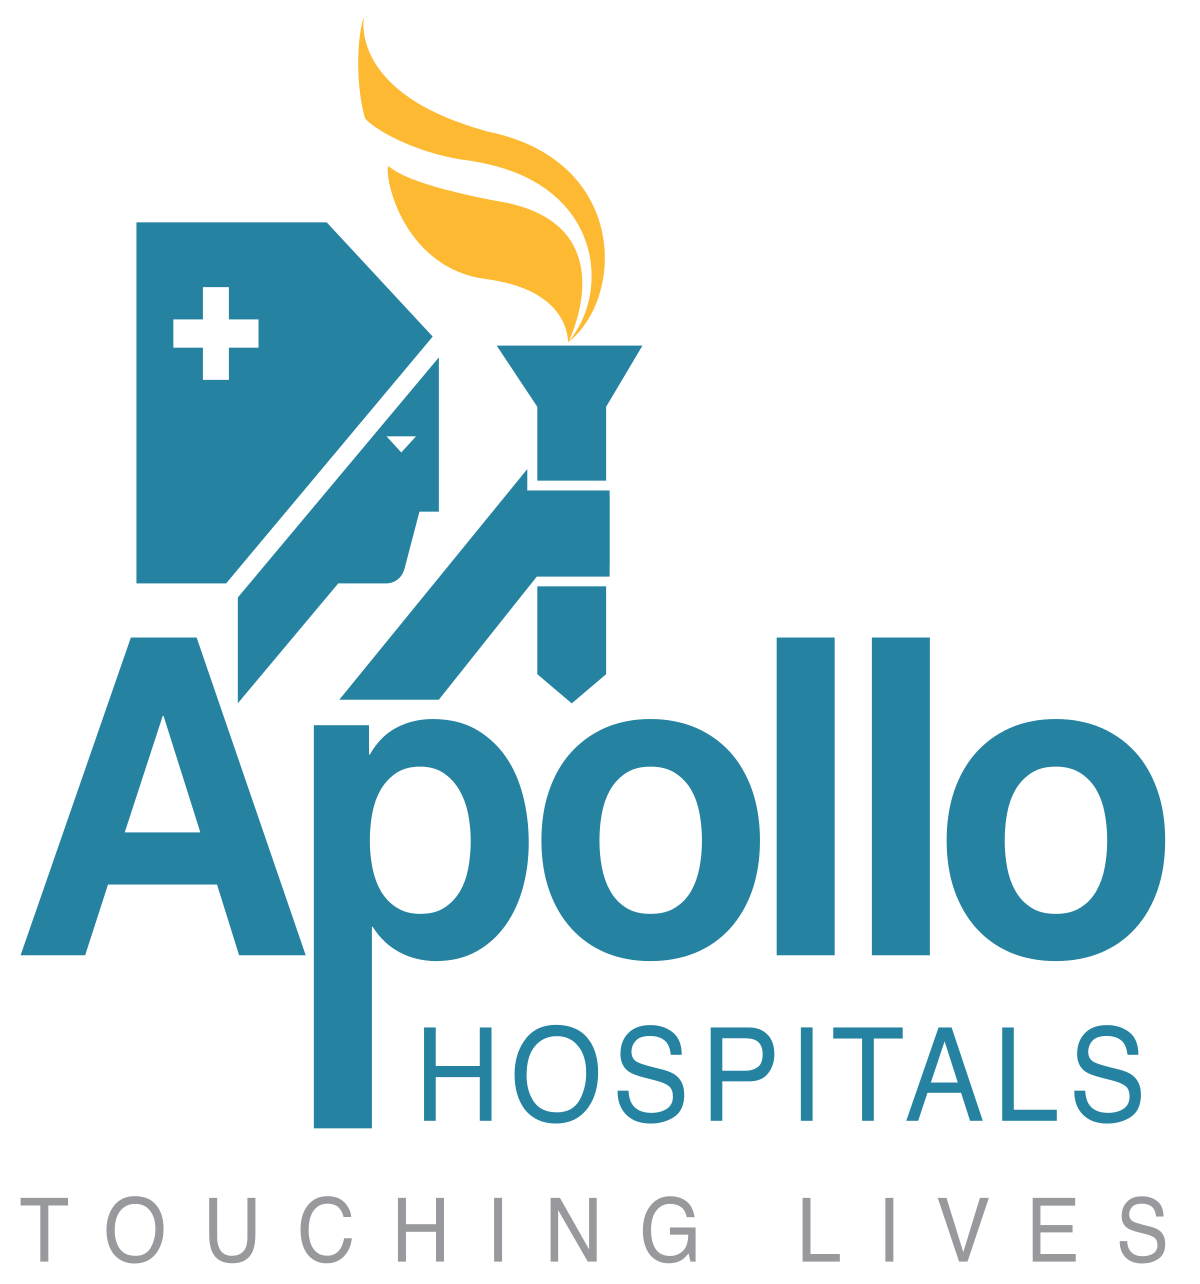 Apollo Logo - Apollo Hospitals